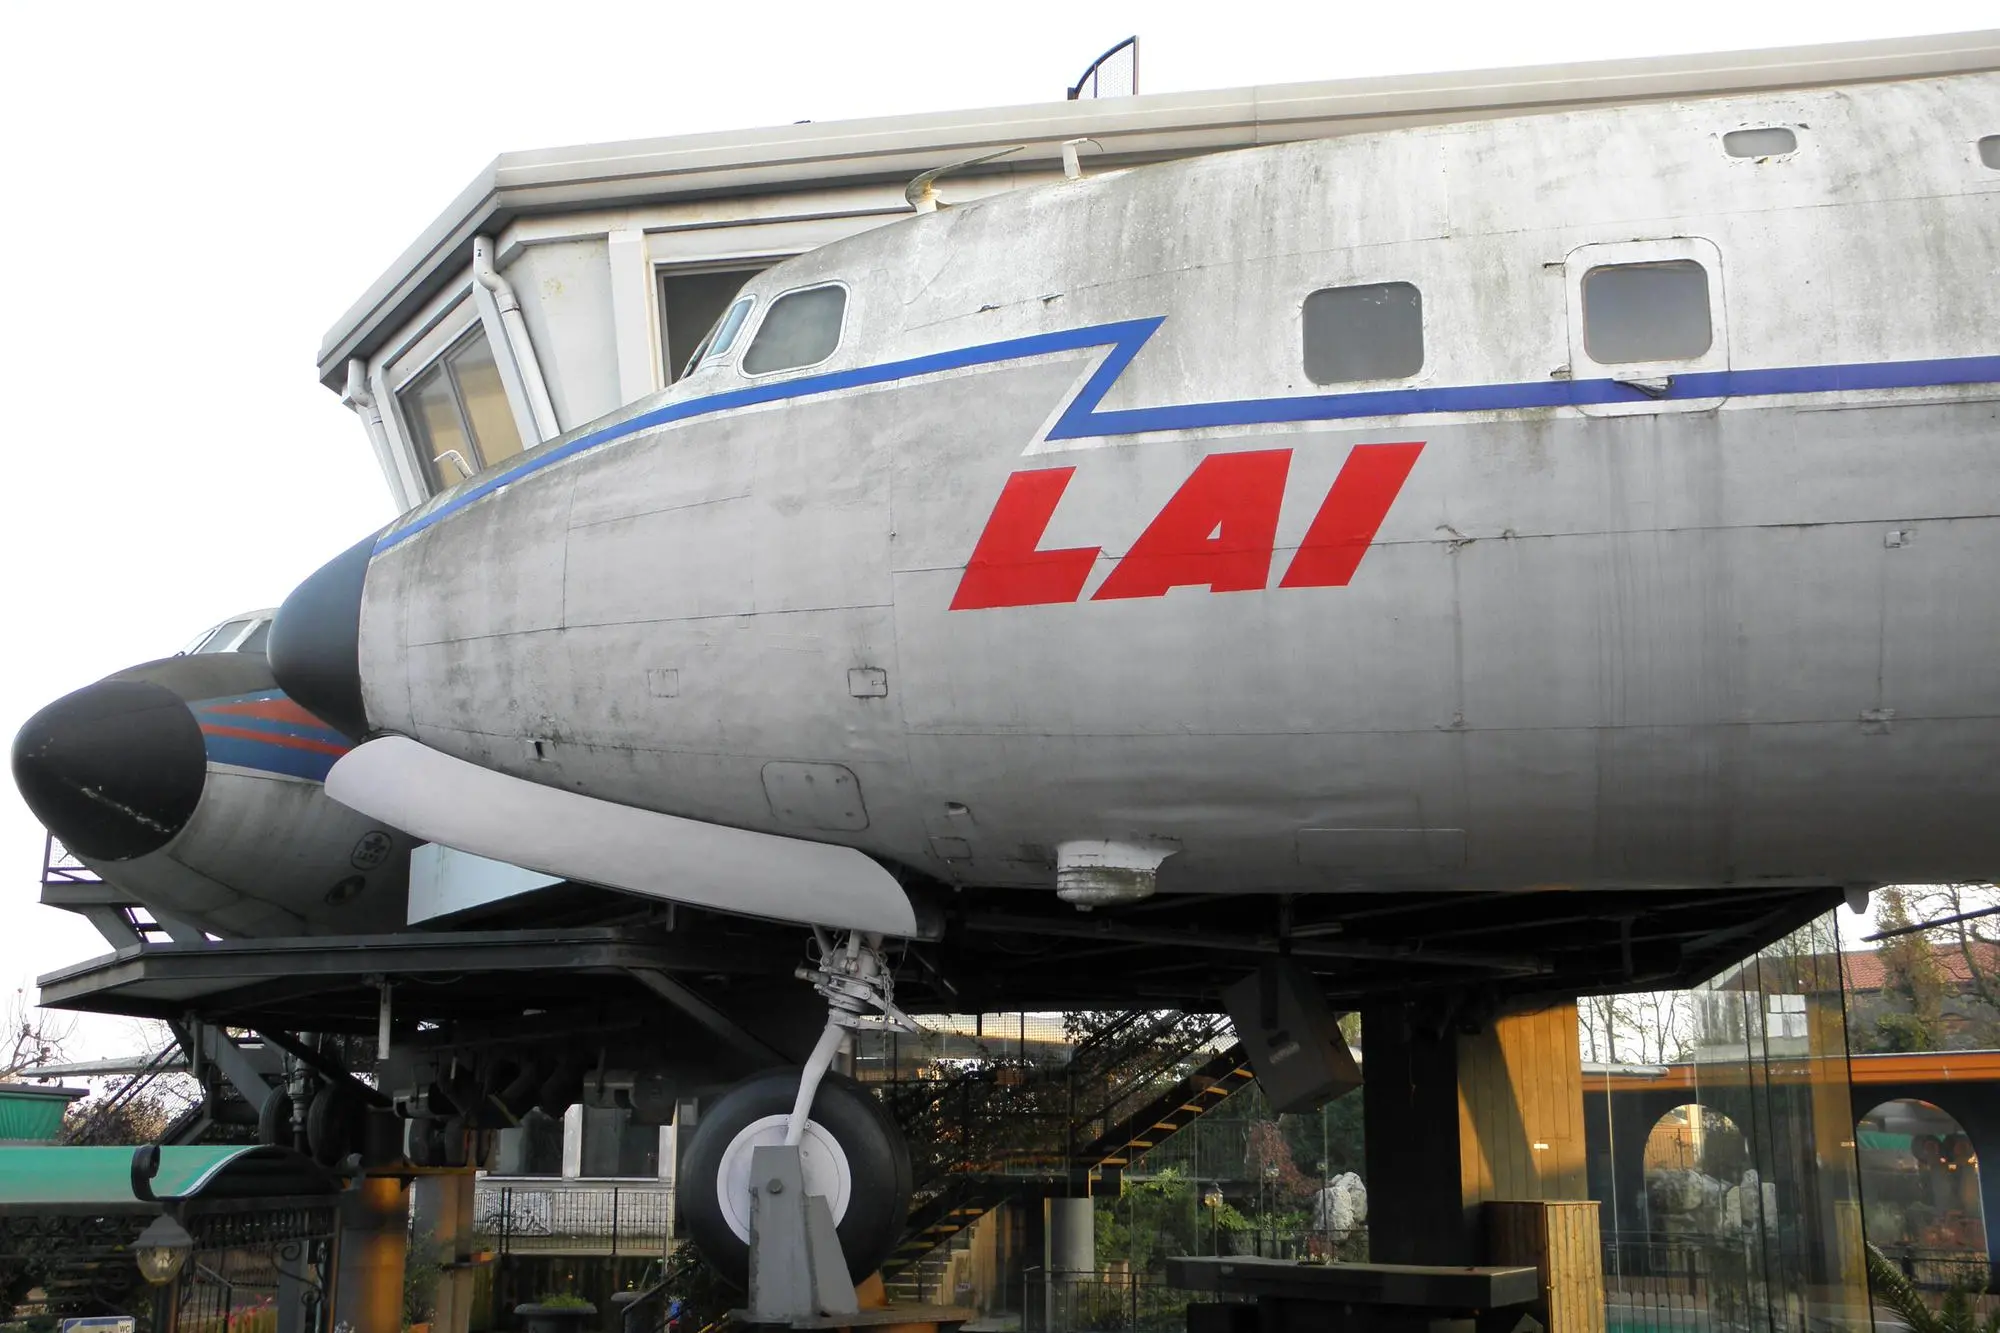 L'aereo era della compagnia Lai